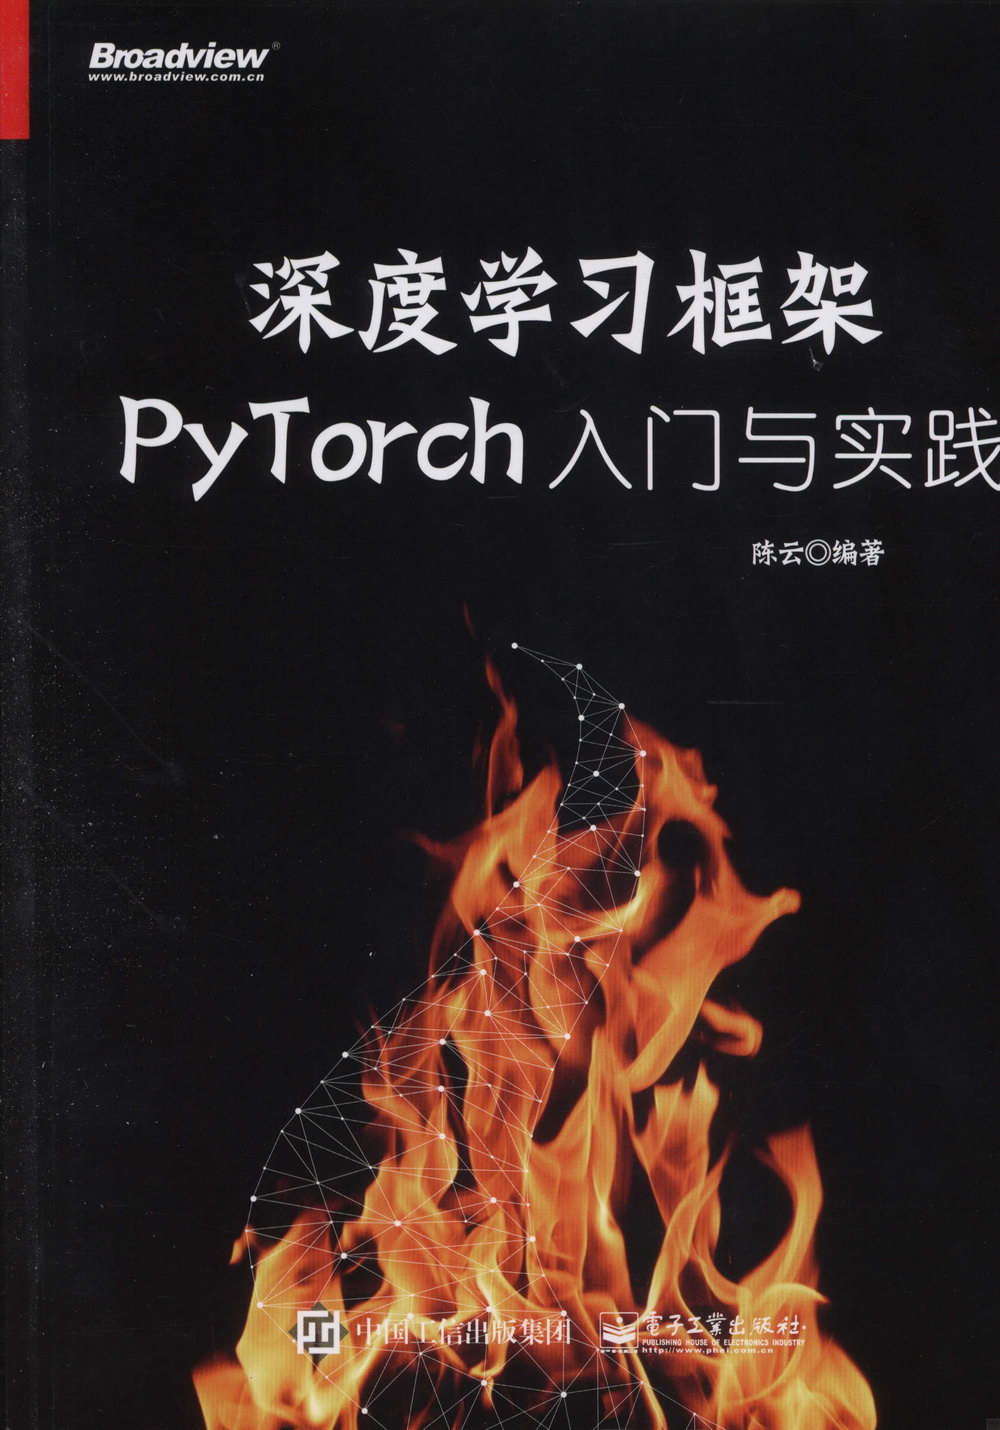 深度學習框架PyTorch：入門與實踐